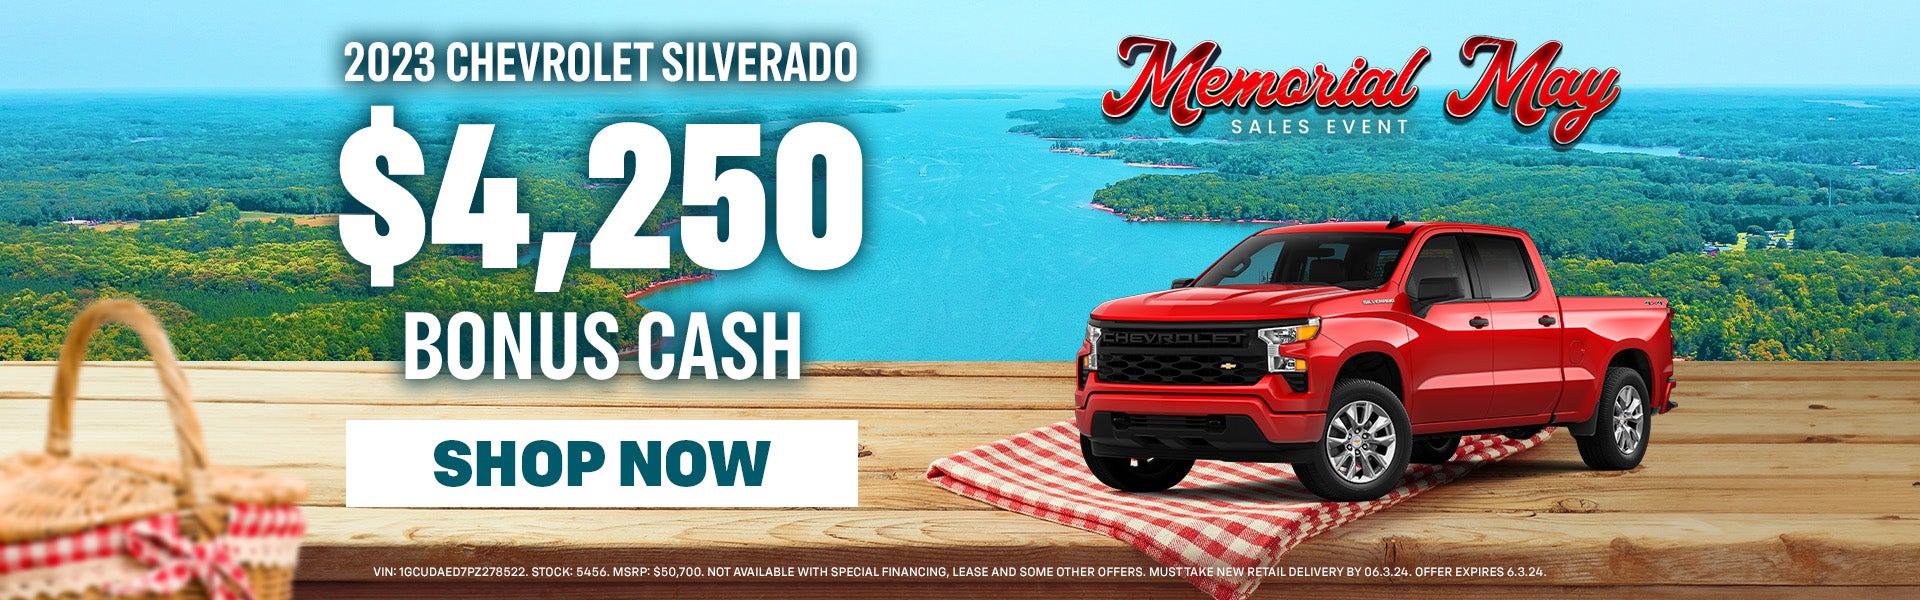 $4,250 bonus cash on 2023 Chevy Silverado 1500